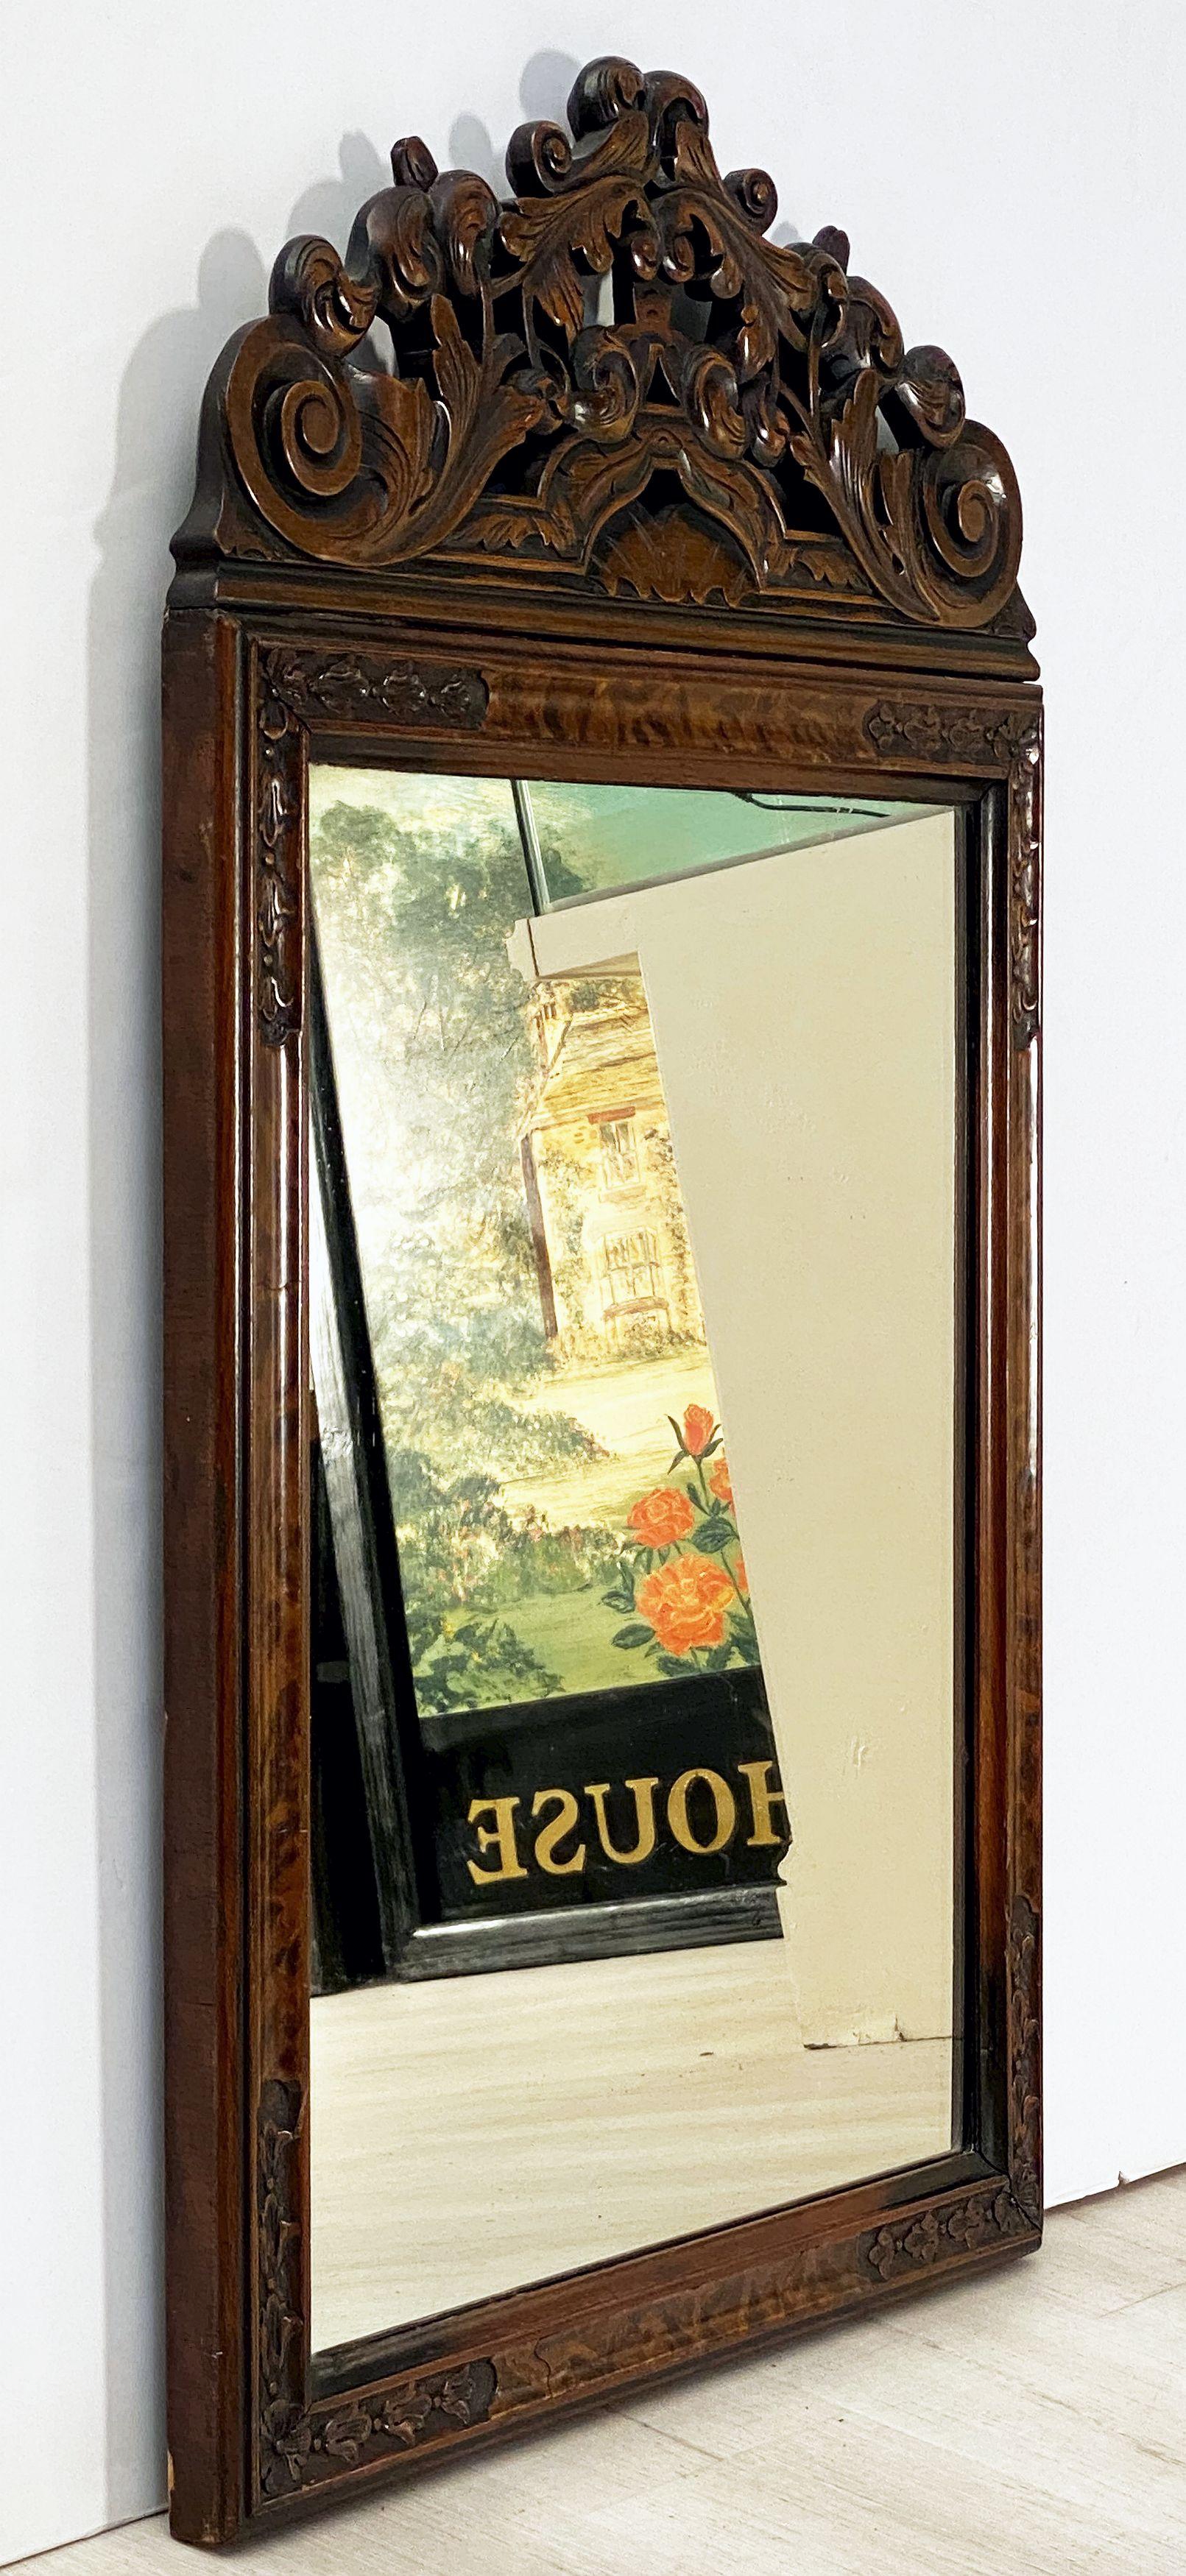 Un beau miroir mural anglais de l'époque édouardienne, présentant un cadre magnifiquement sculpté en noyer avec des motifs de volutes et de feuillages entourant un miroir rectangulaire. Avec étiquette au dos : Denby & Spinks - Meubles de maison -